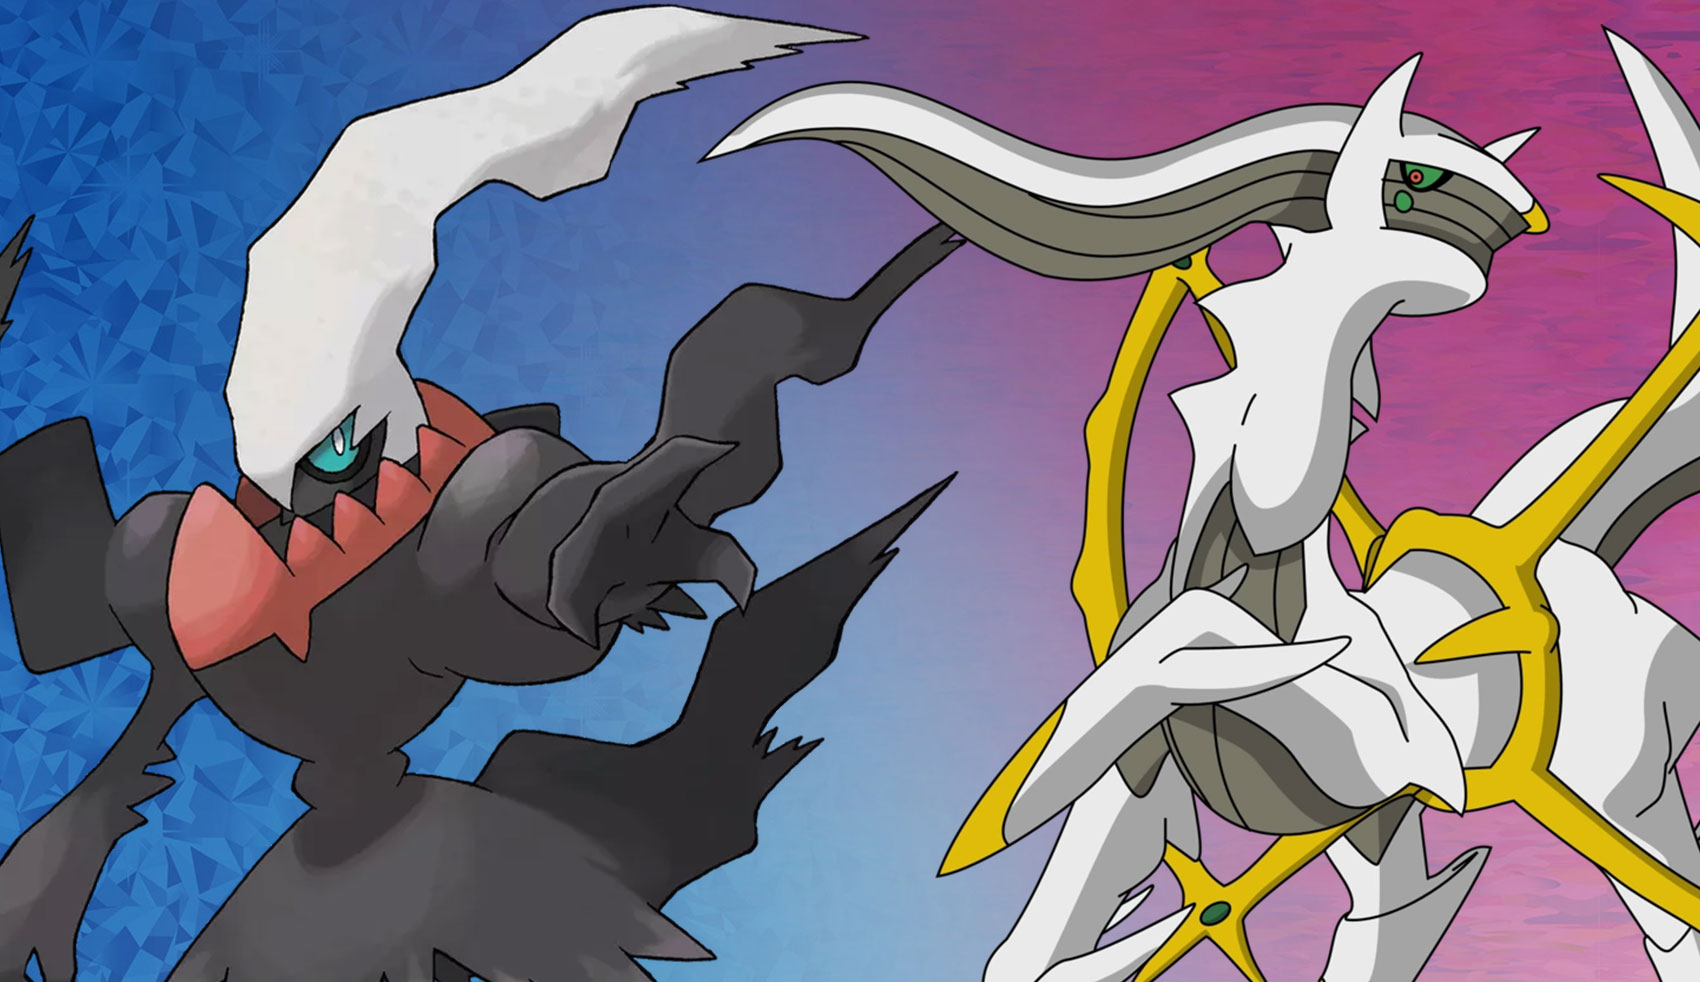 Darkrai e Arceus ficarão disponíveis para jogadores de Pokémon